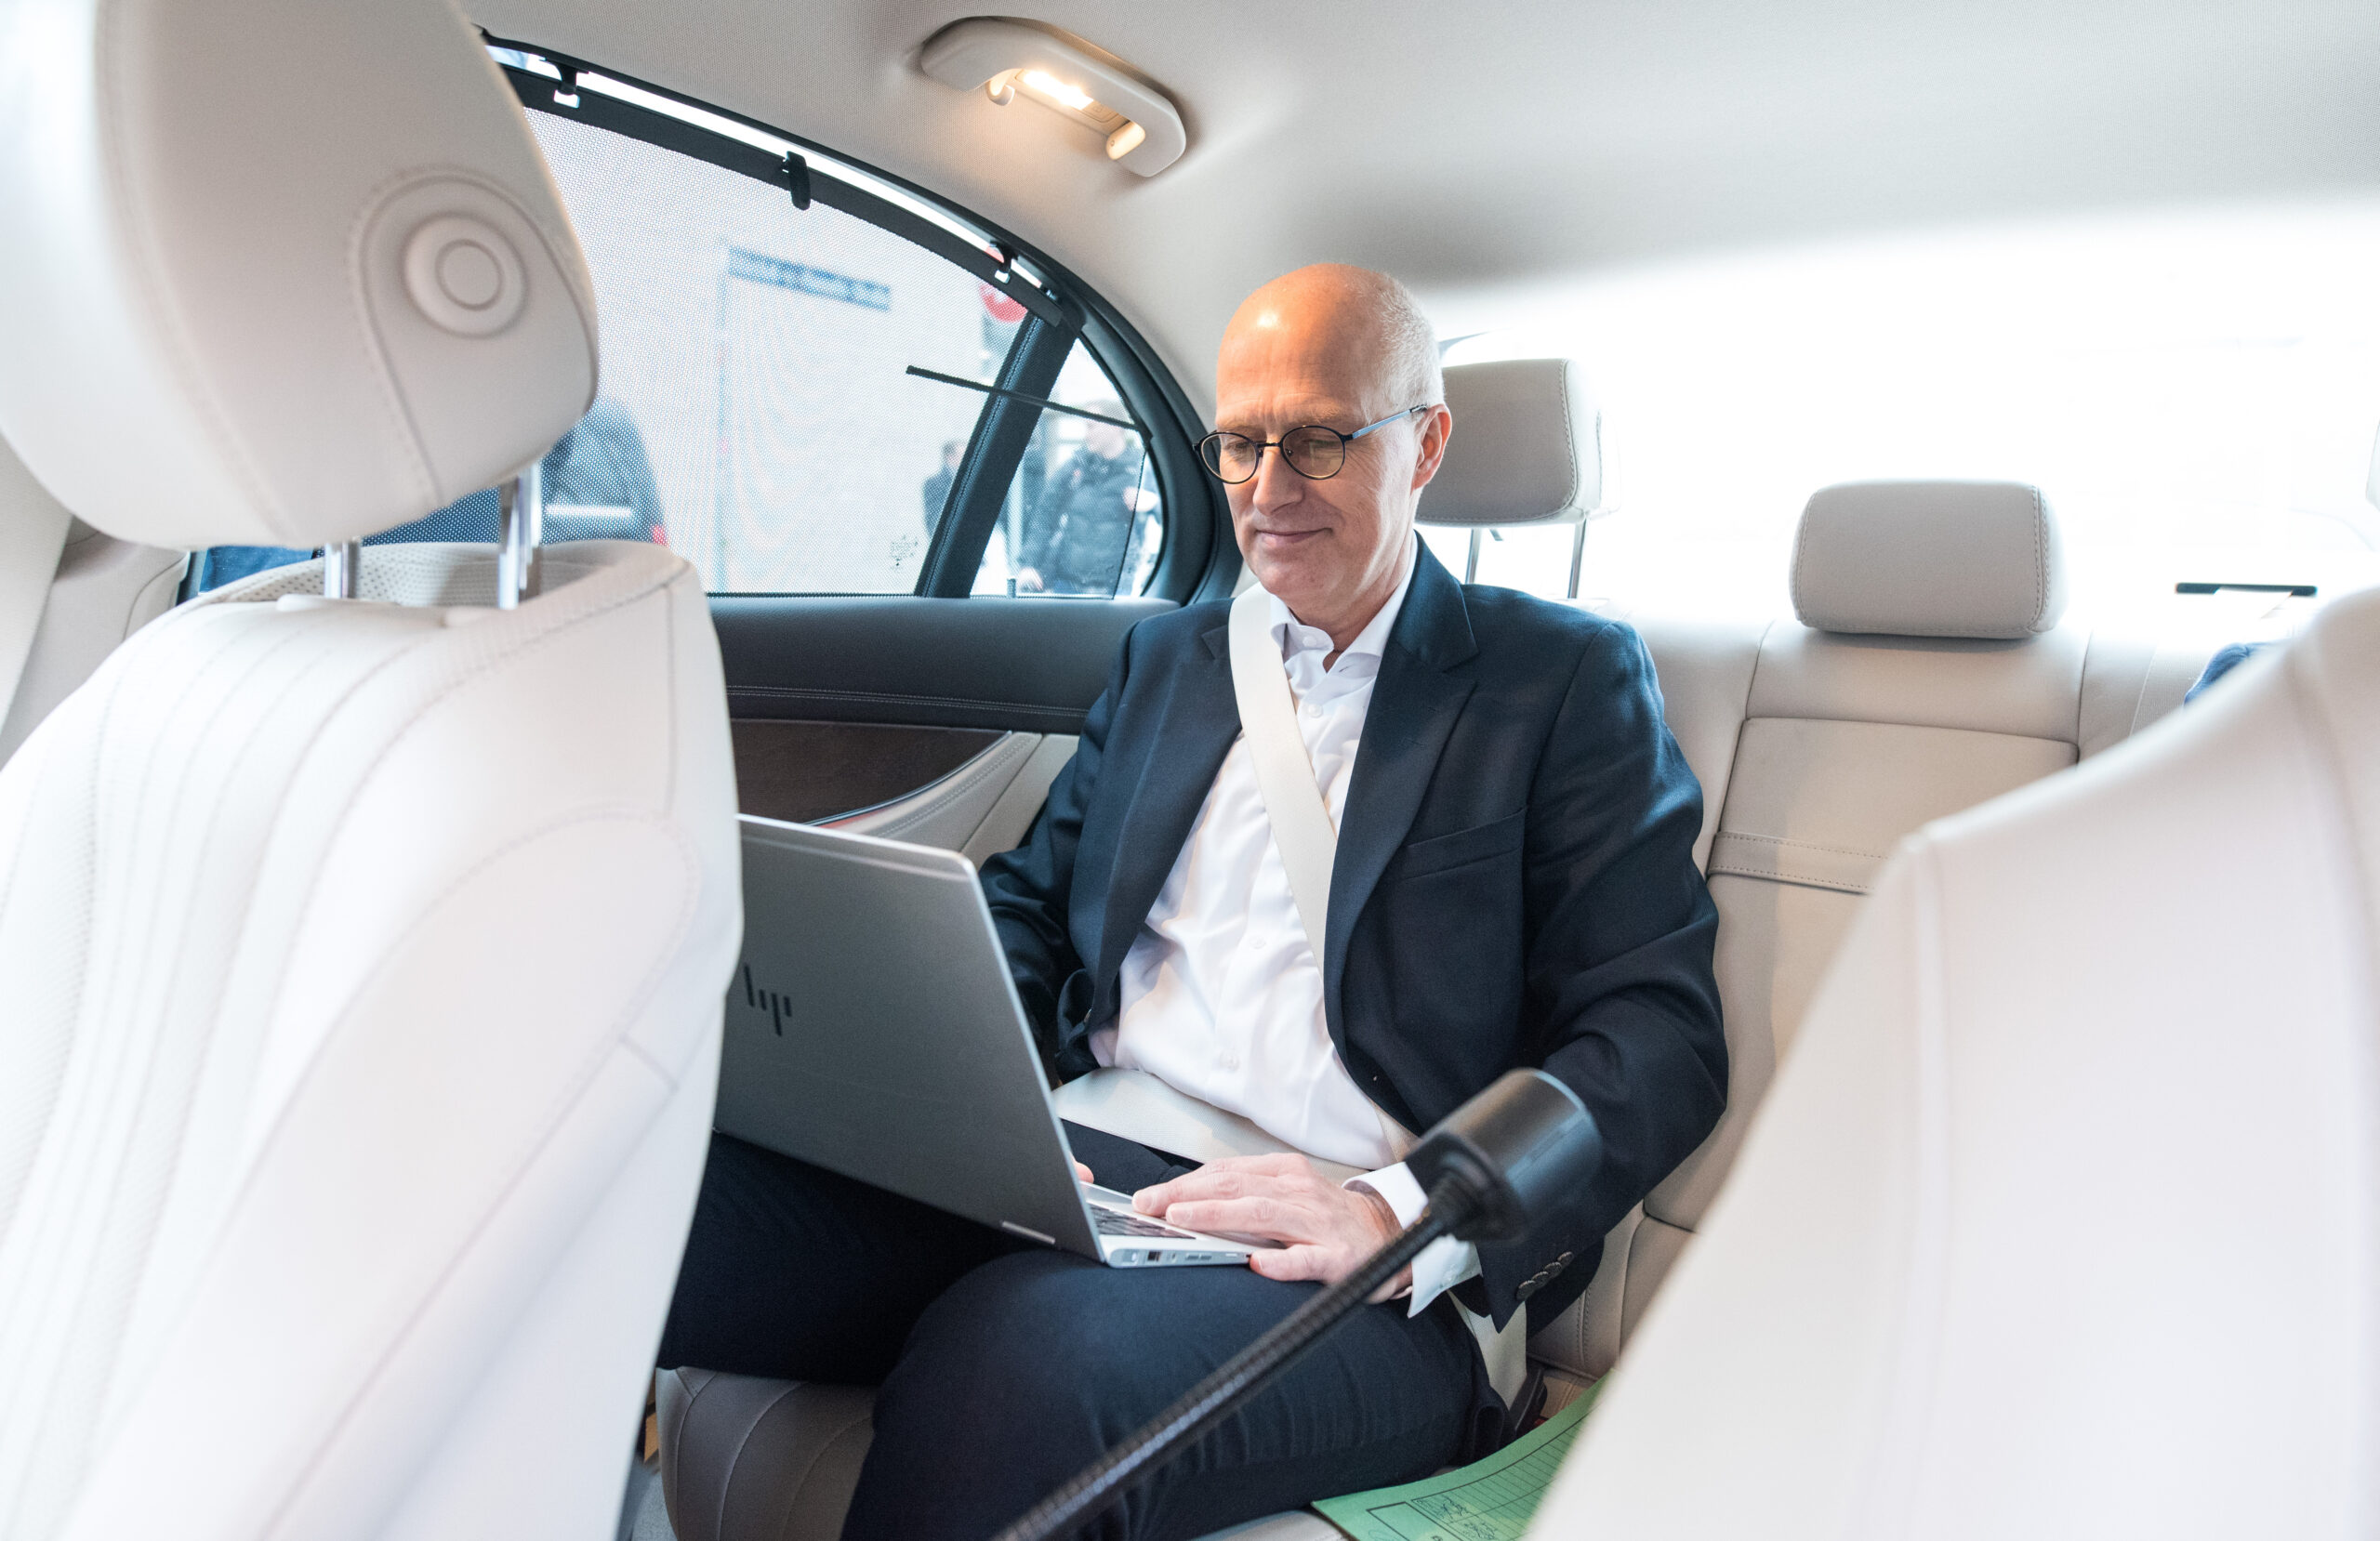 Bürgermeister Peter Tschentscher (SPD) mit Laptop in seinem Dienstwagen.